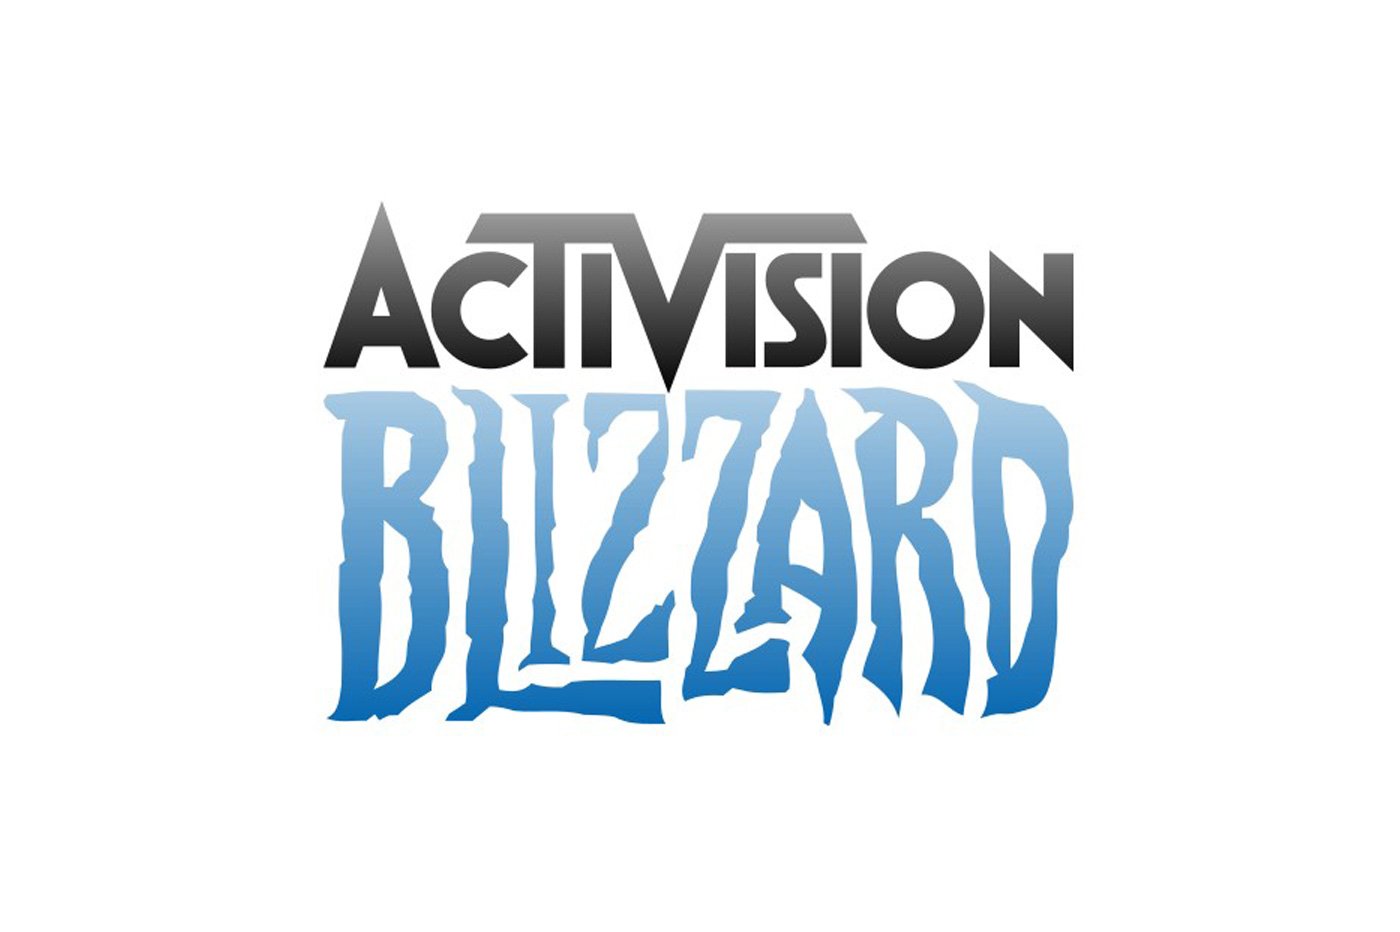 On sait pourquoi Activision Blizzard a quitté GeForce Now... et c'est une histoire de gros sous